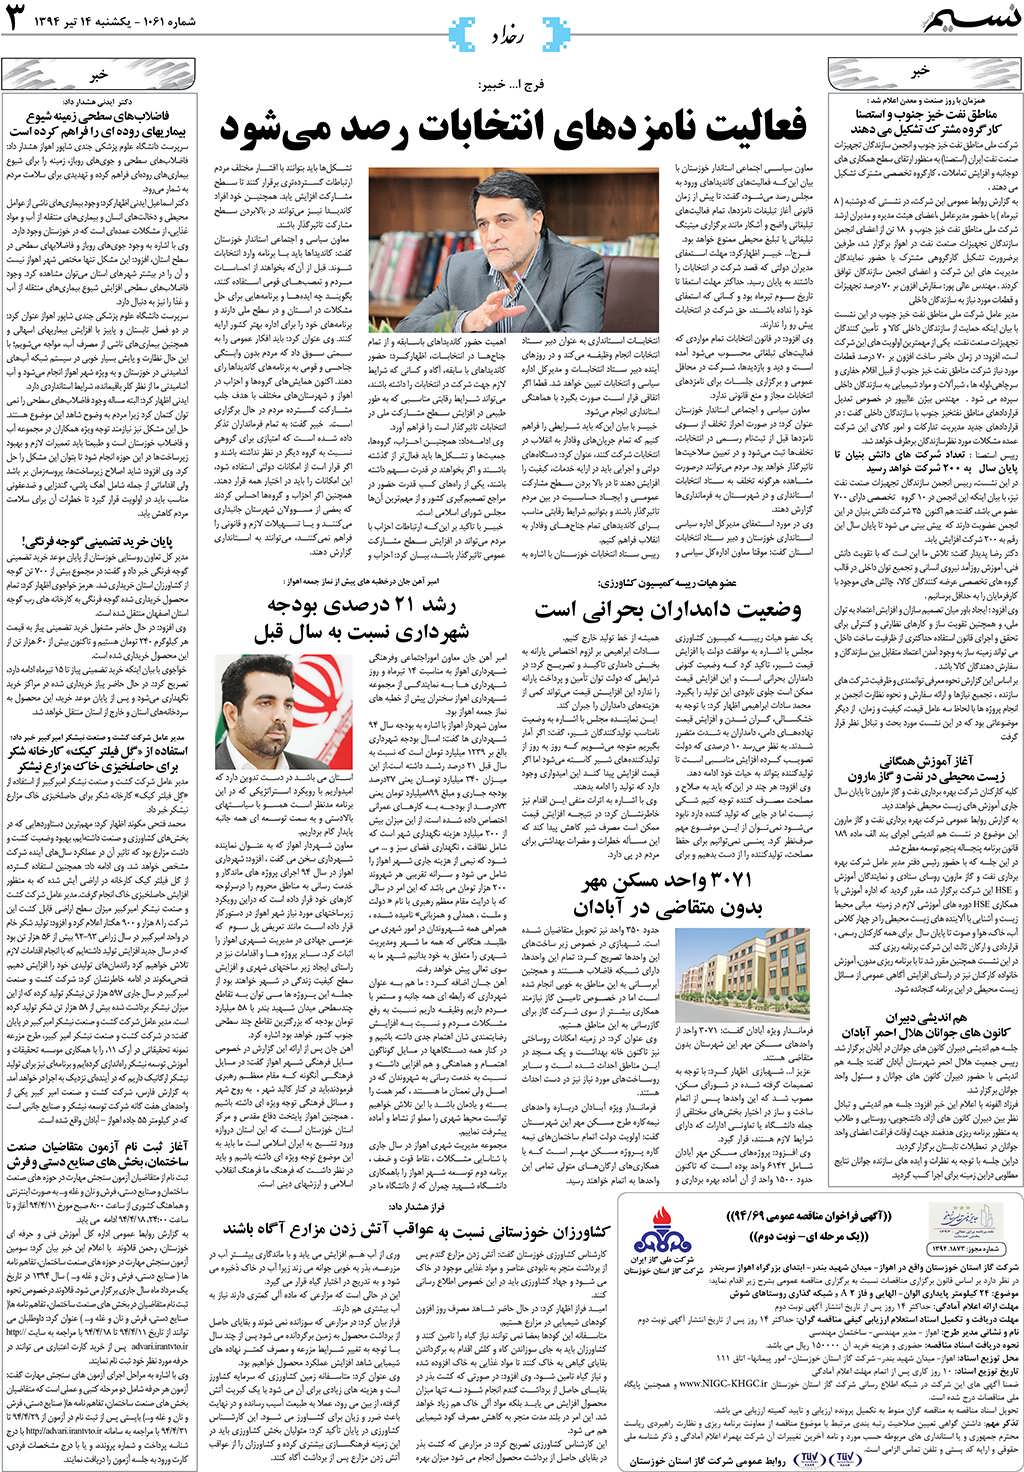 صفحه رخداد روزنامه نسیم شماره 1061